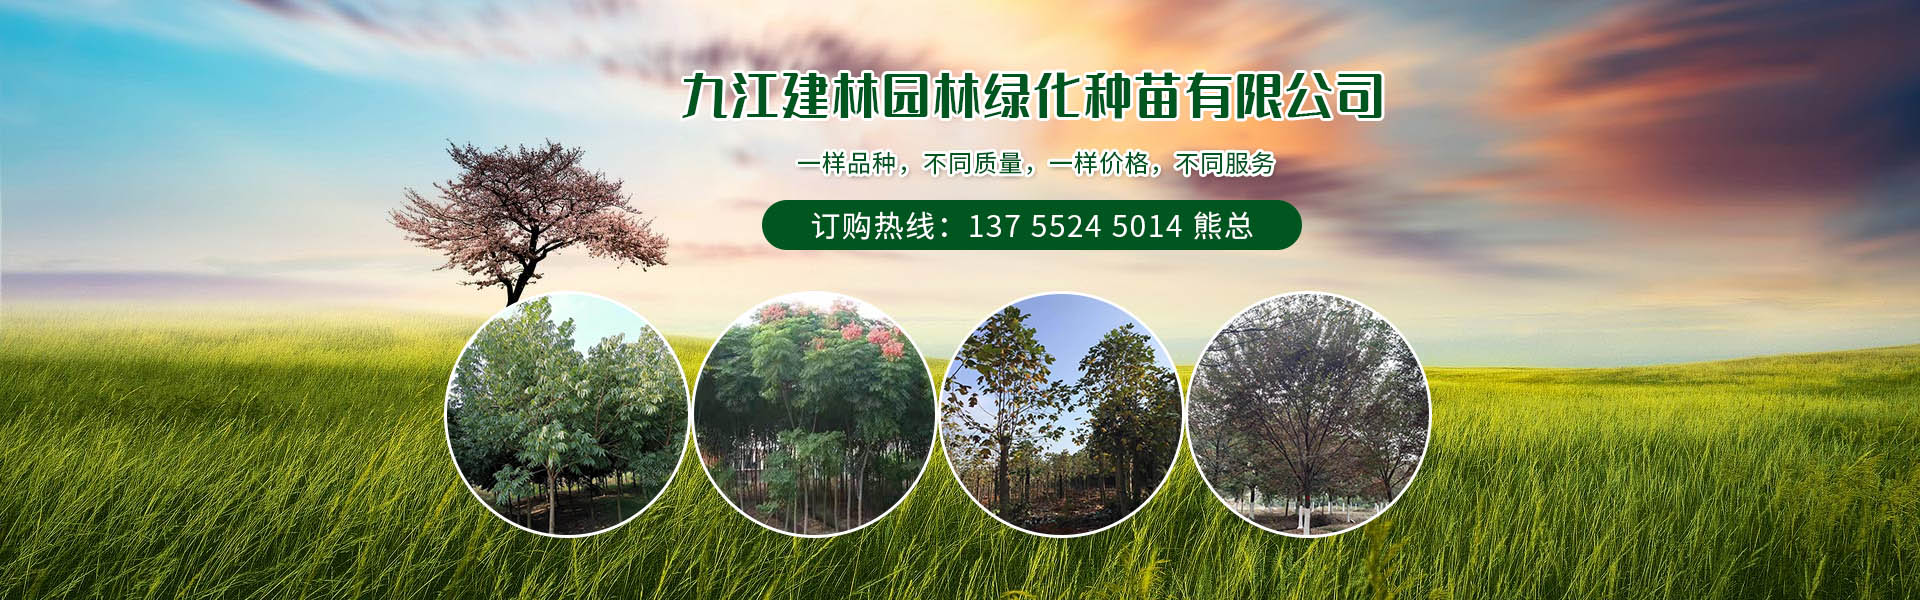 九江建林園林綠化種苗有限公司